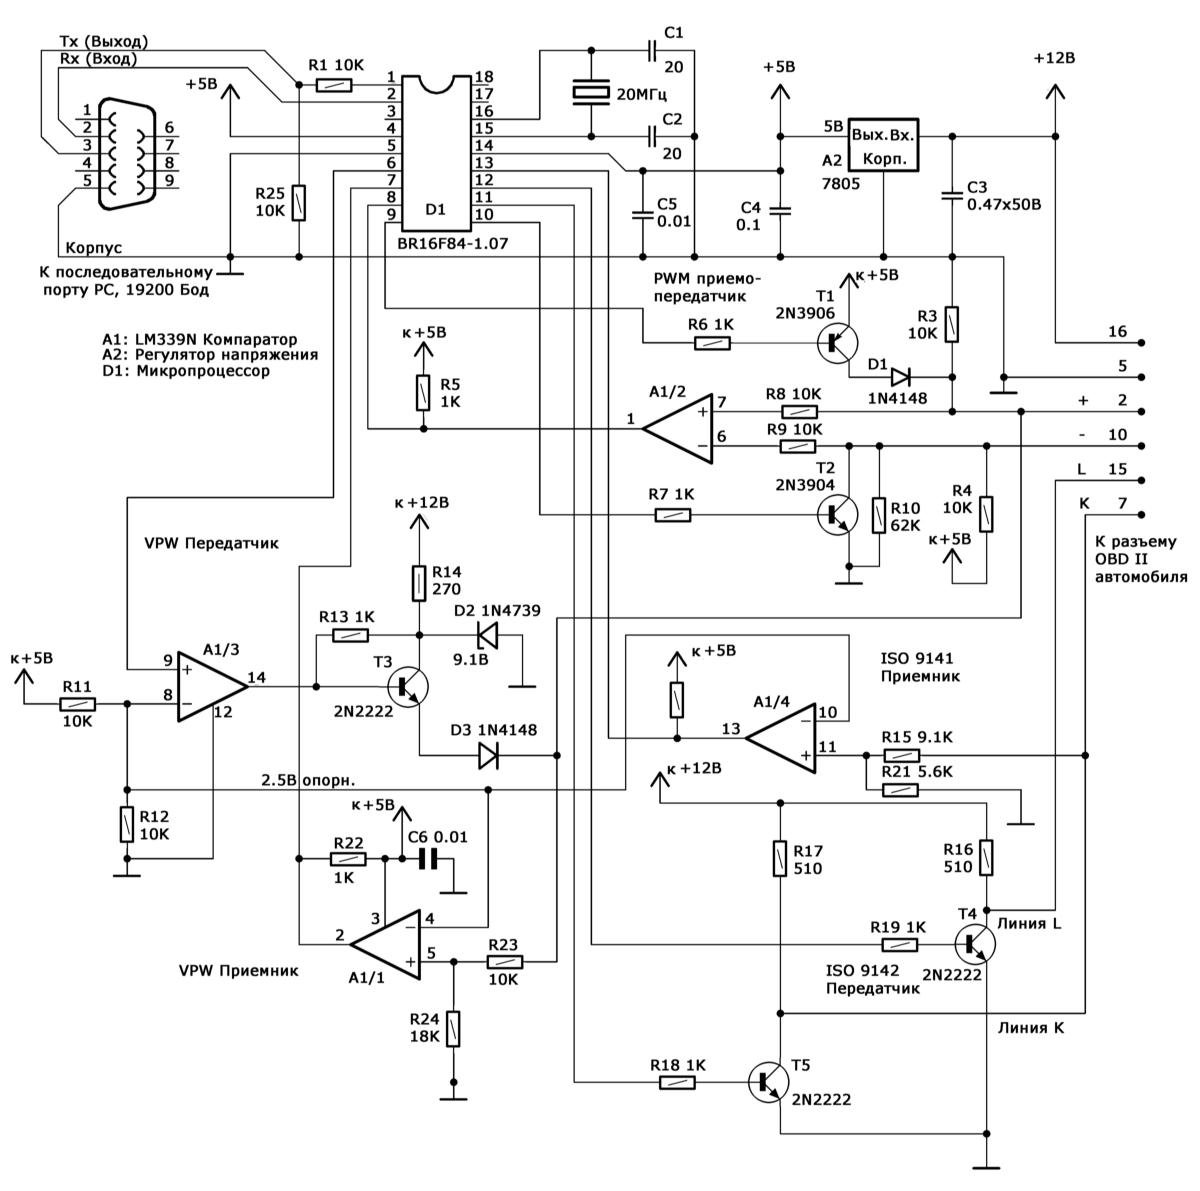 Схема контроллера сопряжения персонального компьютера с бортовой системой самодиагностики OBD II Mercedes-Benz W203